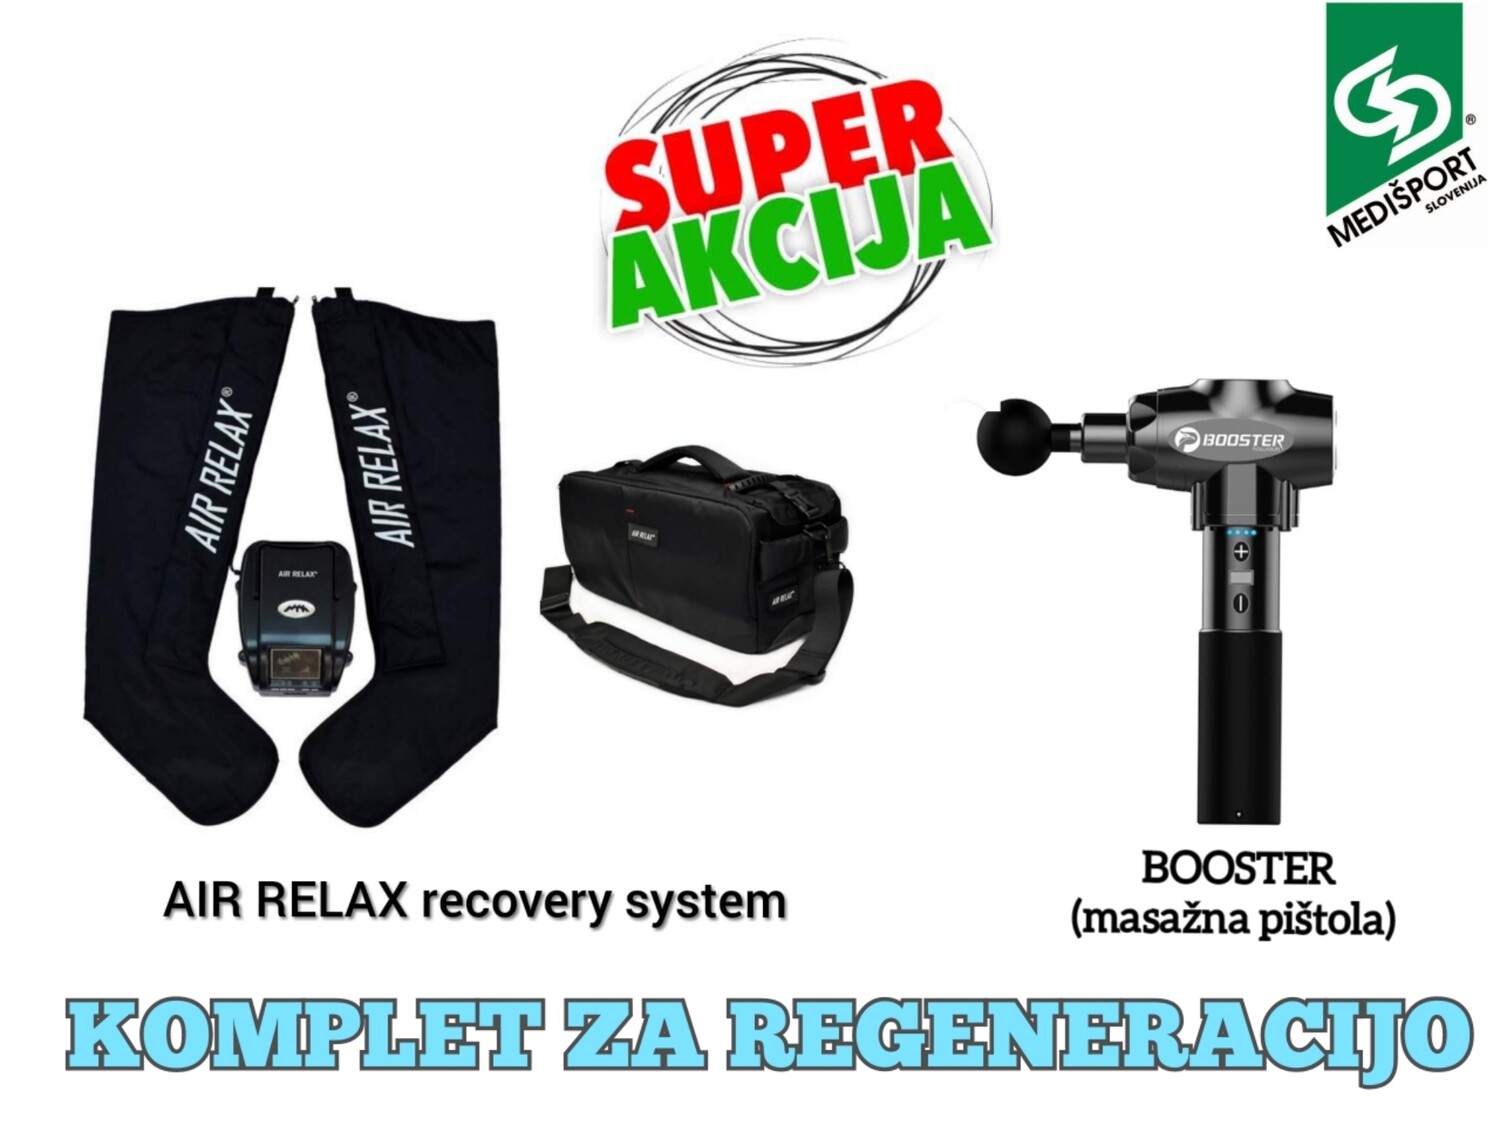 KOMPLET ZA REGENERACIJO: AIR RELAX recovery system s transportno torbo + BOOSTER  masažna pištola.